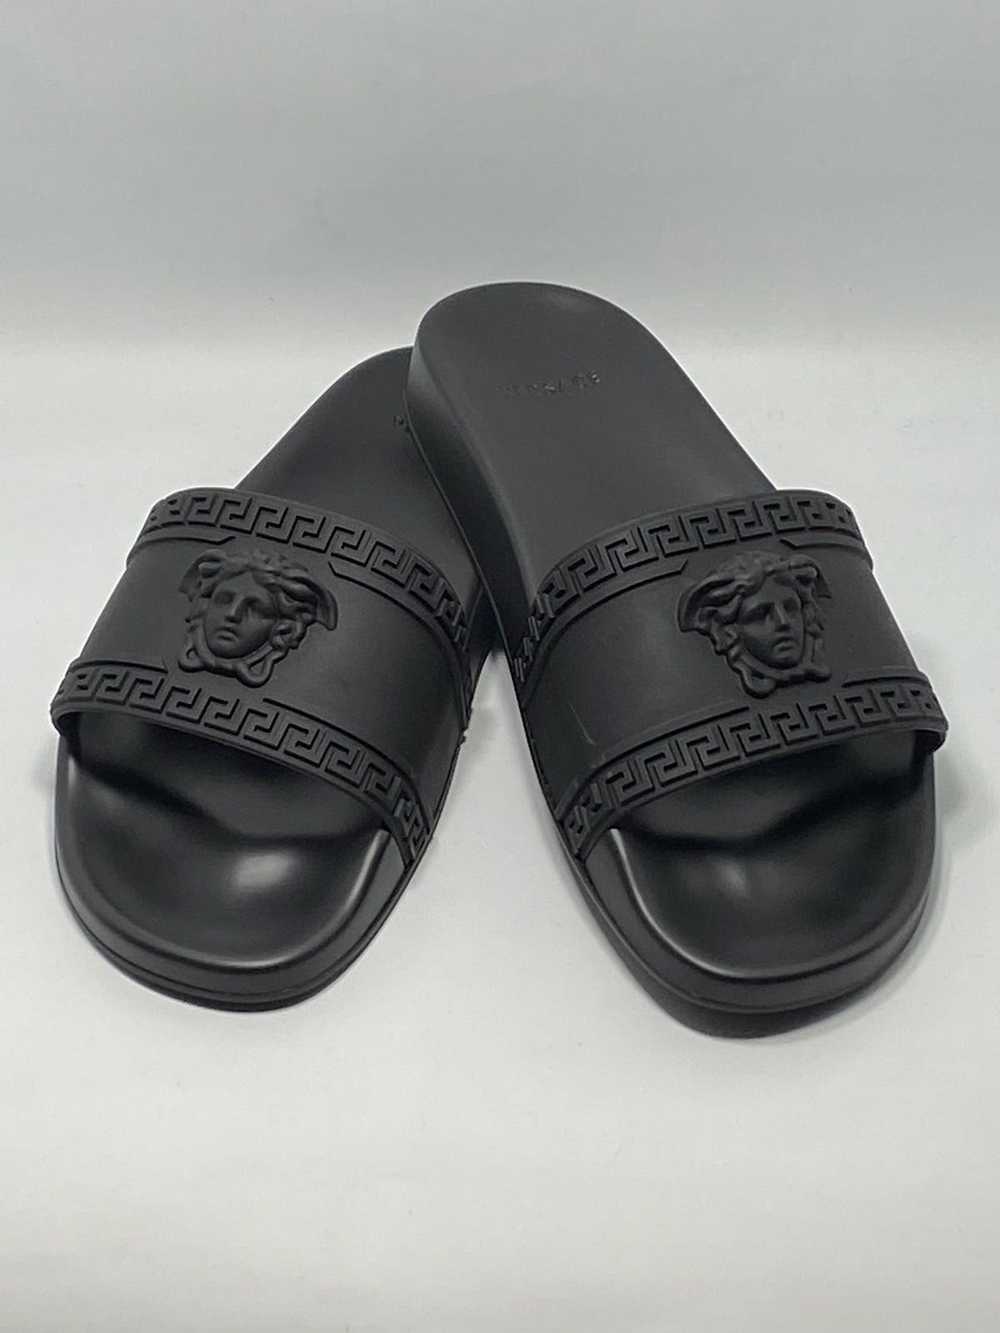 Versace Versace Medusa Rubber Pool Slide Sandals size… - Gem